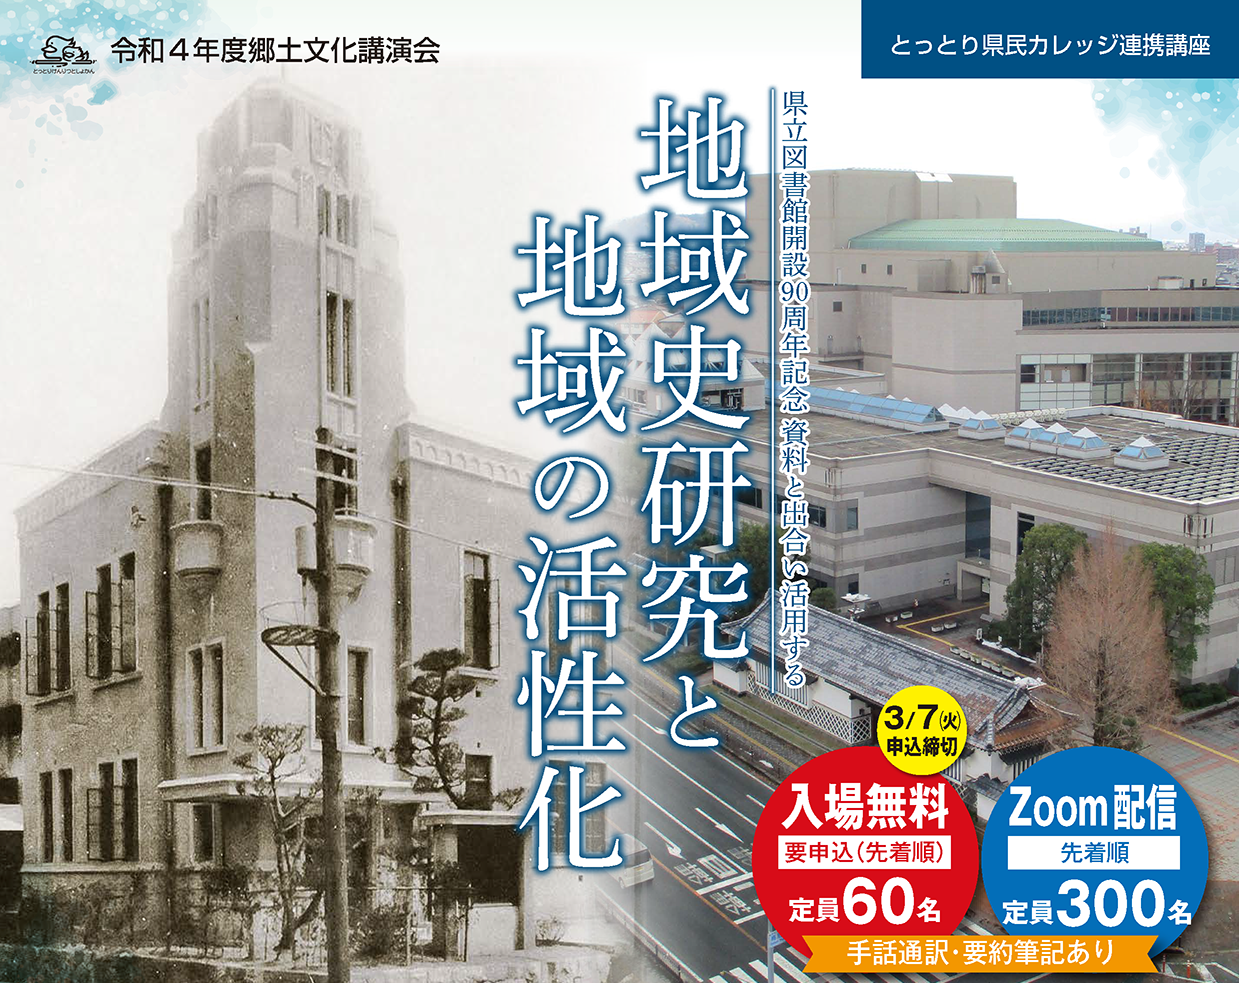 トリミング　23010005-鳥取県立図書館-地域史研究と地域の活性化-チラシ低画像_ページ1.png